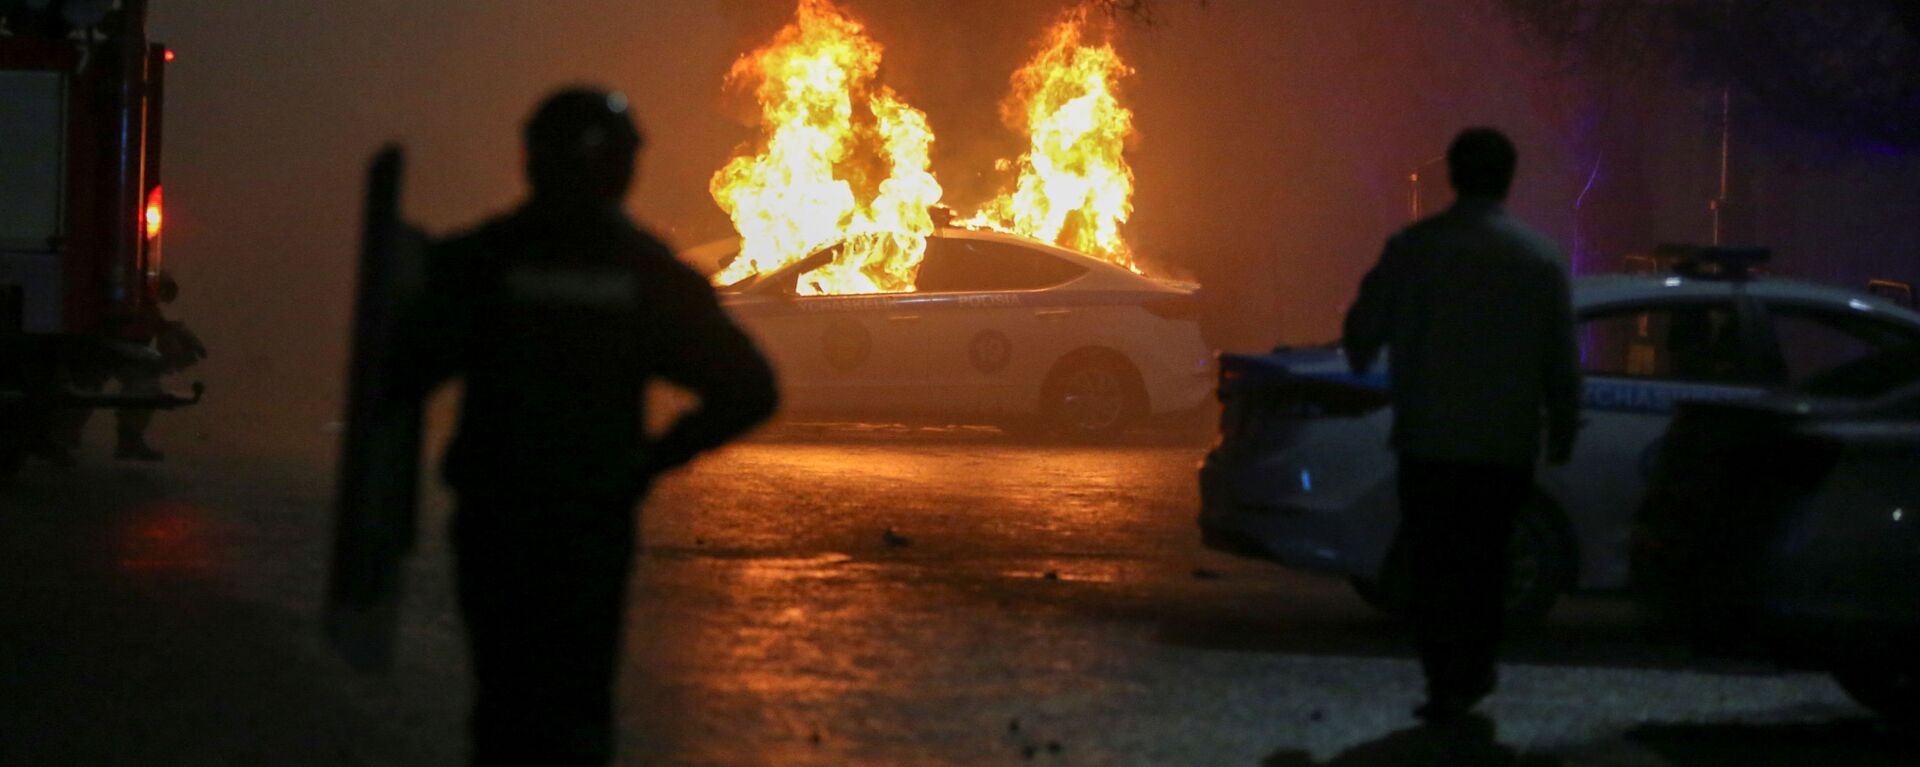 Carro policial queimando durante protestos contra a subida do preço de gás de petróleo liquefeito pelas autoridades cazaques, em Almaty, Cazaquistão, 5 de janeiro de 2022 - Sputnik Brasil, 1920, 05.01.2022